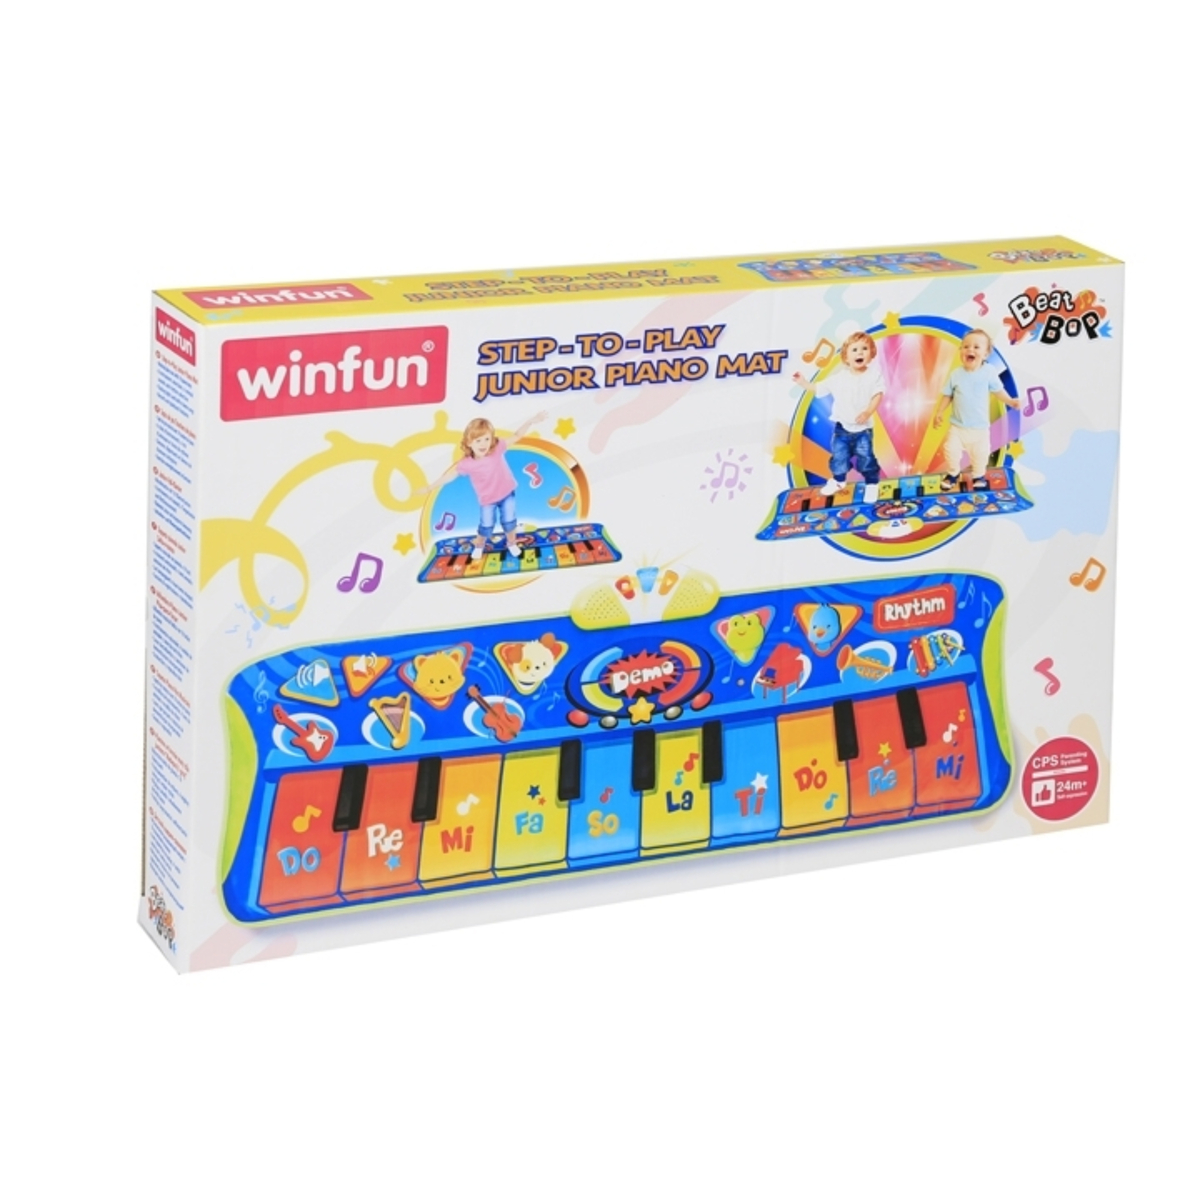 وينفن حصيرة بيانو صغيره للأطفال ، 002507